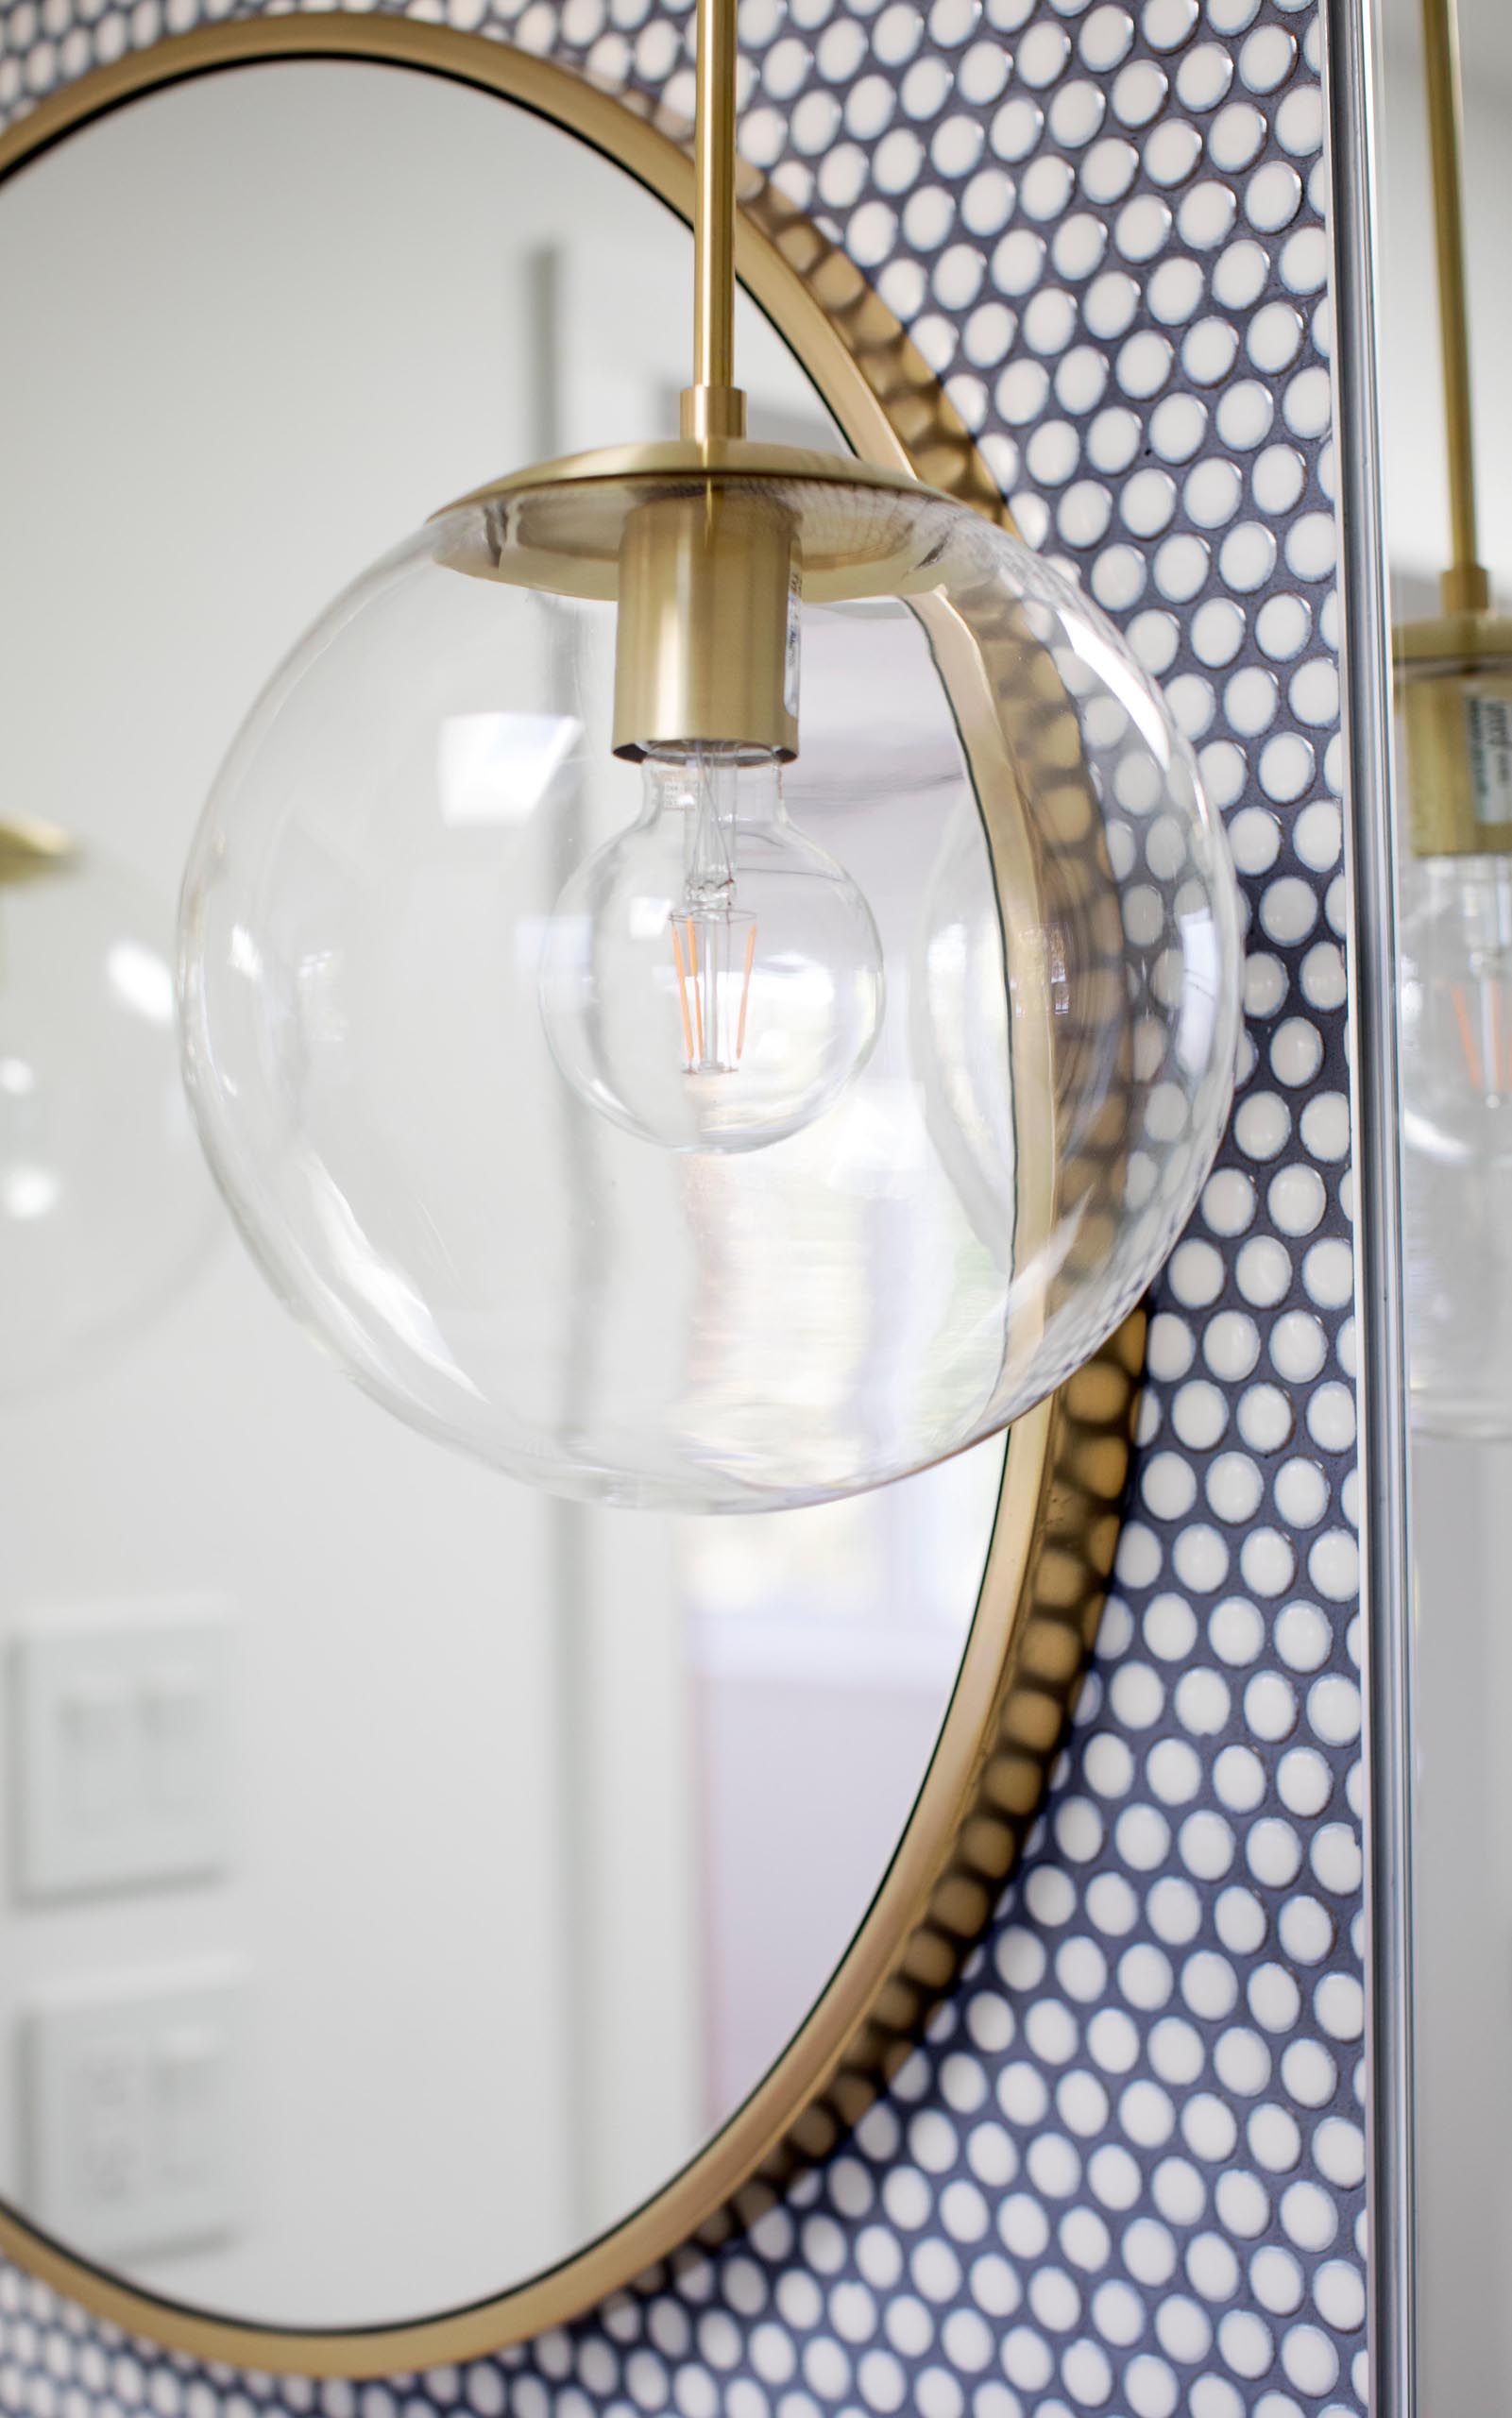 Современная ванная комната с белой плиткой для пенни, контрастной темной затиркой, круглым зеркалом в золотой раме и подходящим подвесным светильником со стеклянным шаром.